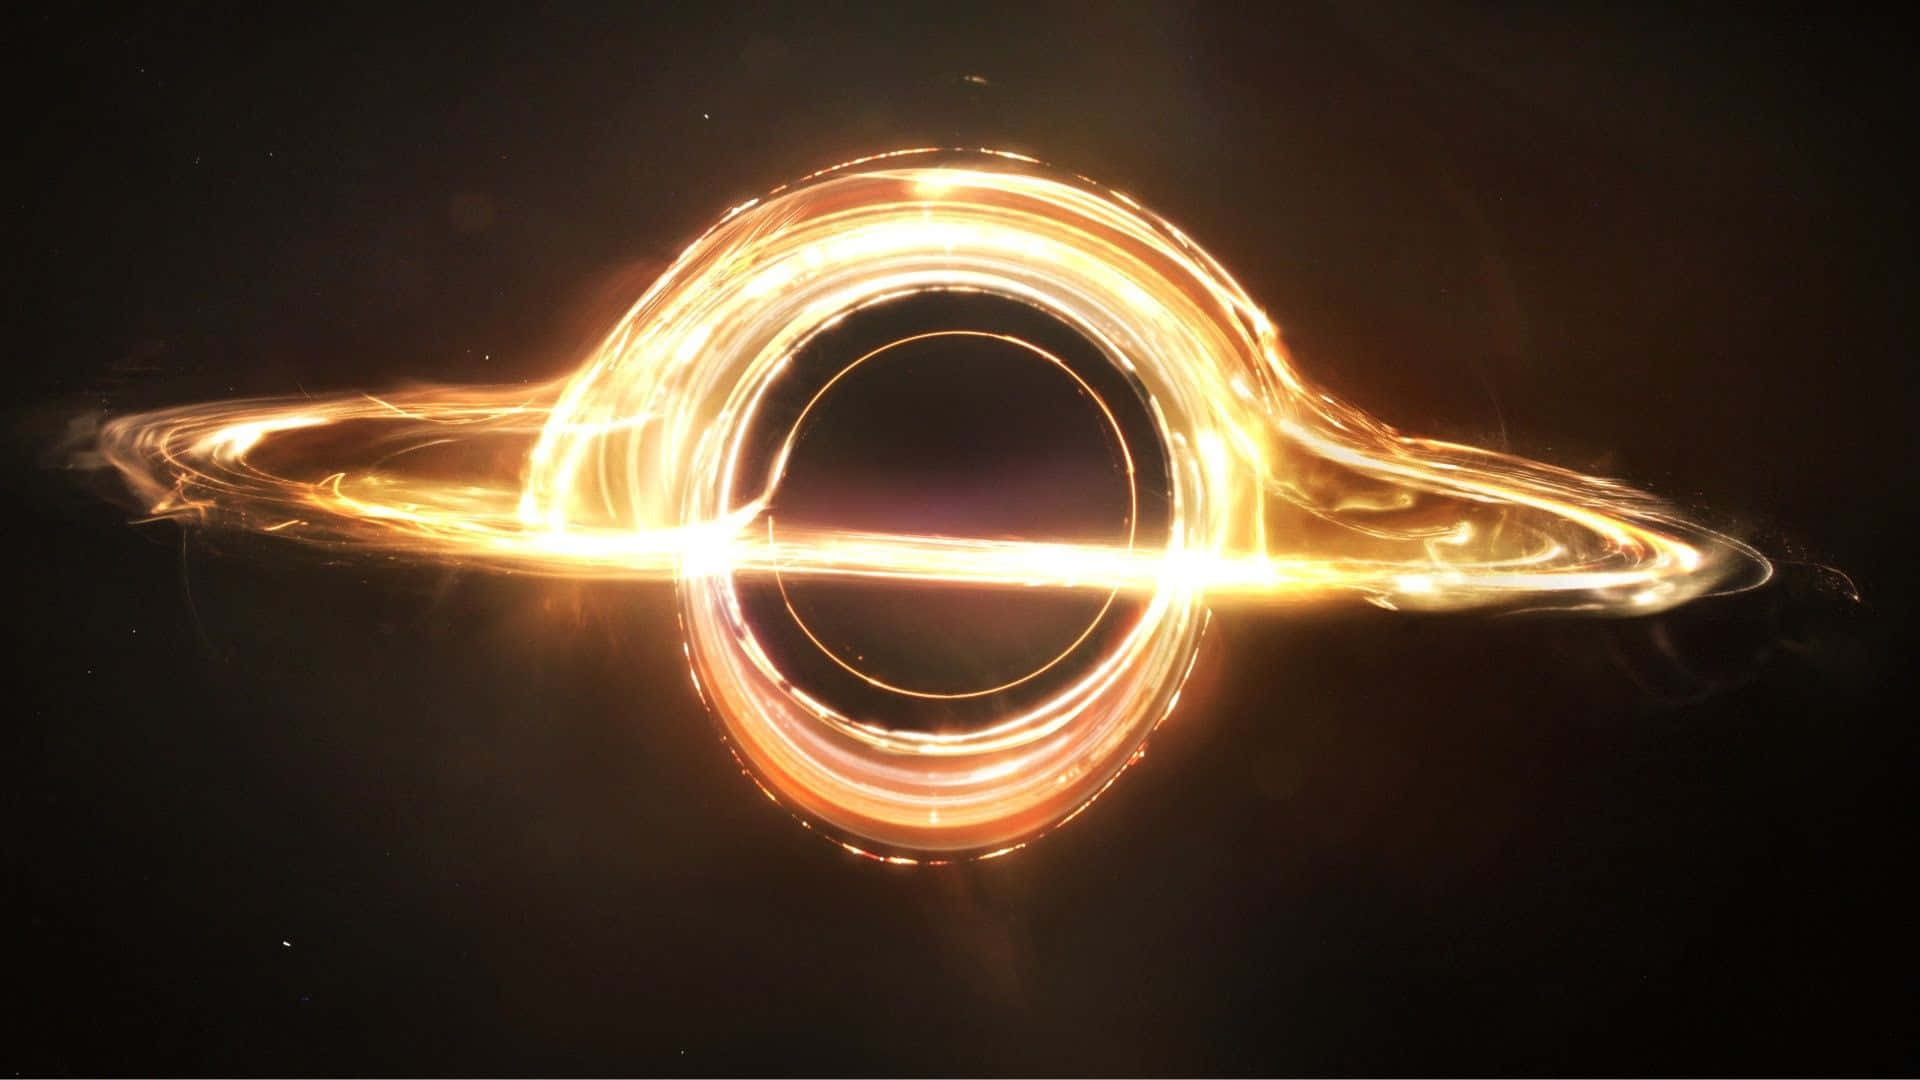 Group of Interstellar Blackhole on HD wallpaper  Pxfuel